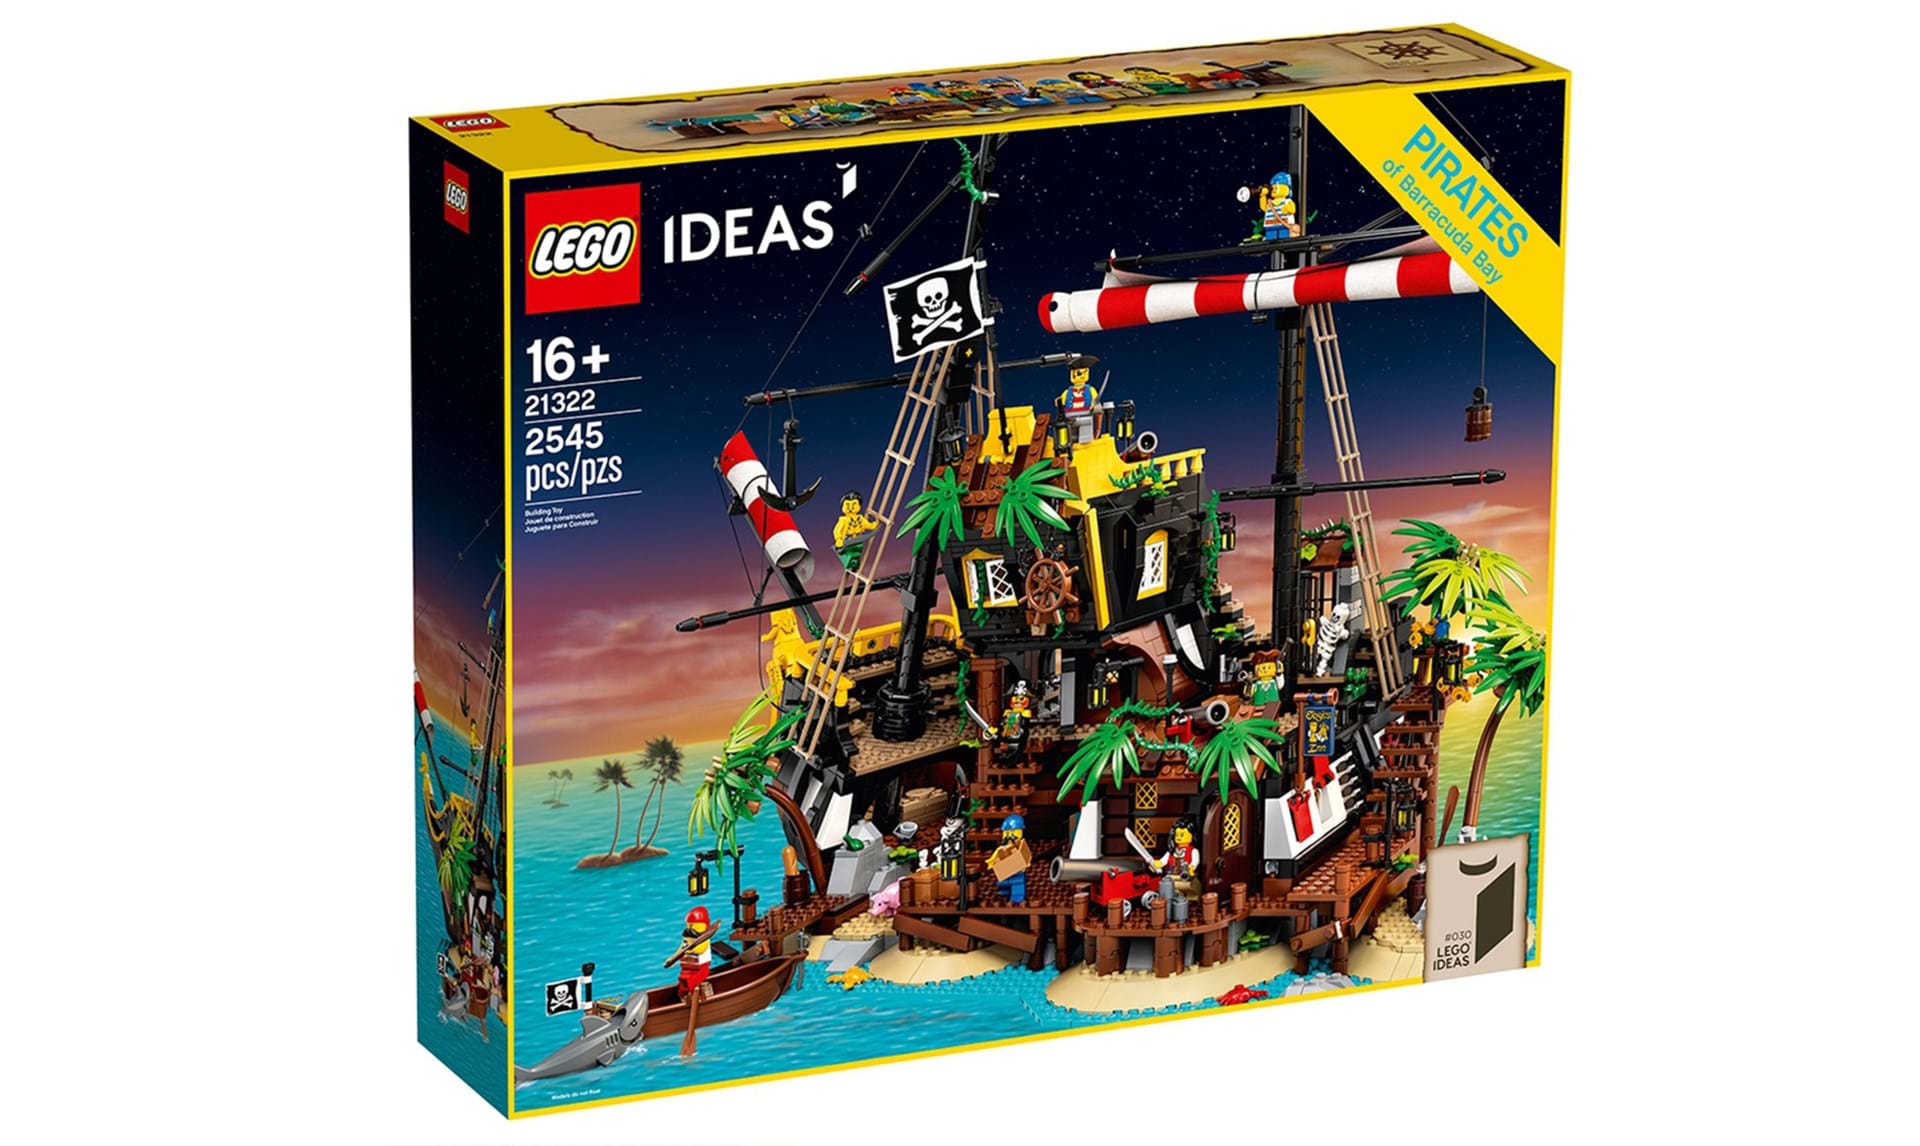 anker hvorfor Seminar Lego genudgiver populært piratskib - Euroman